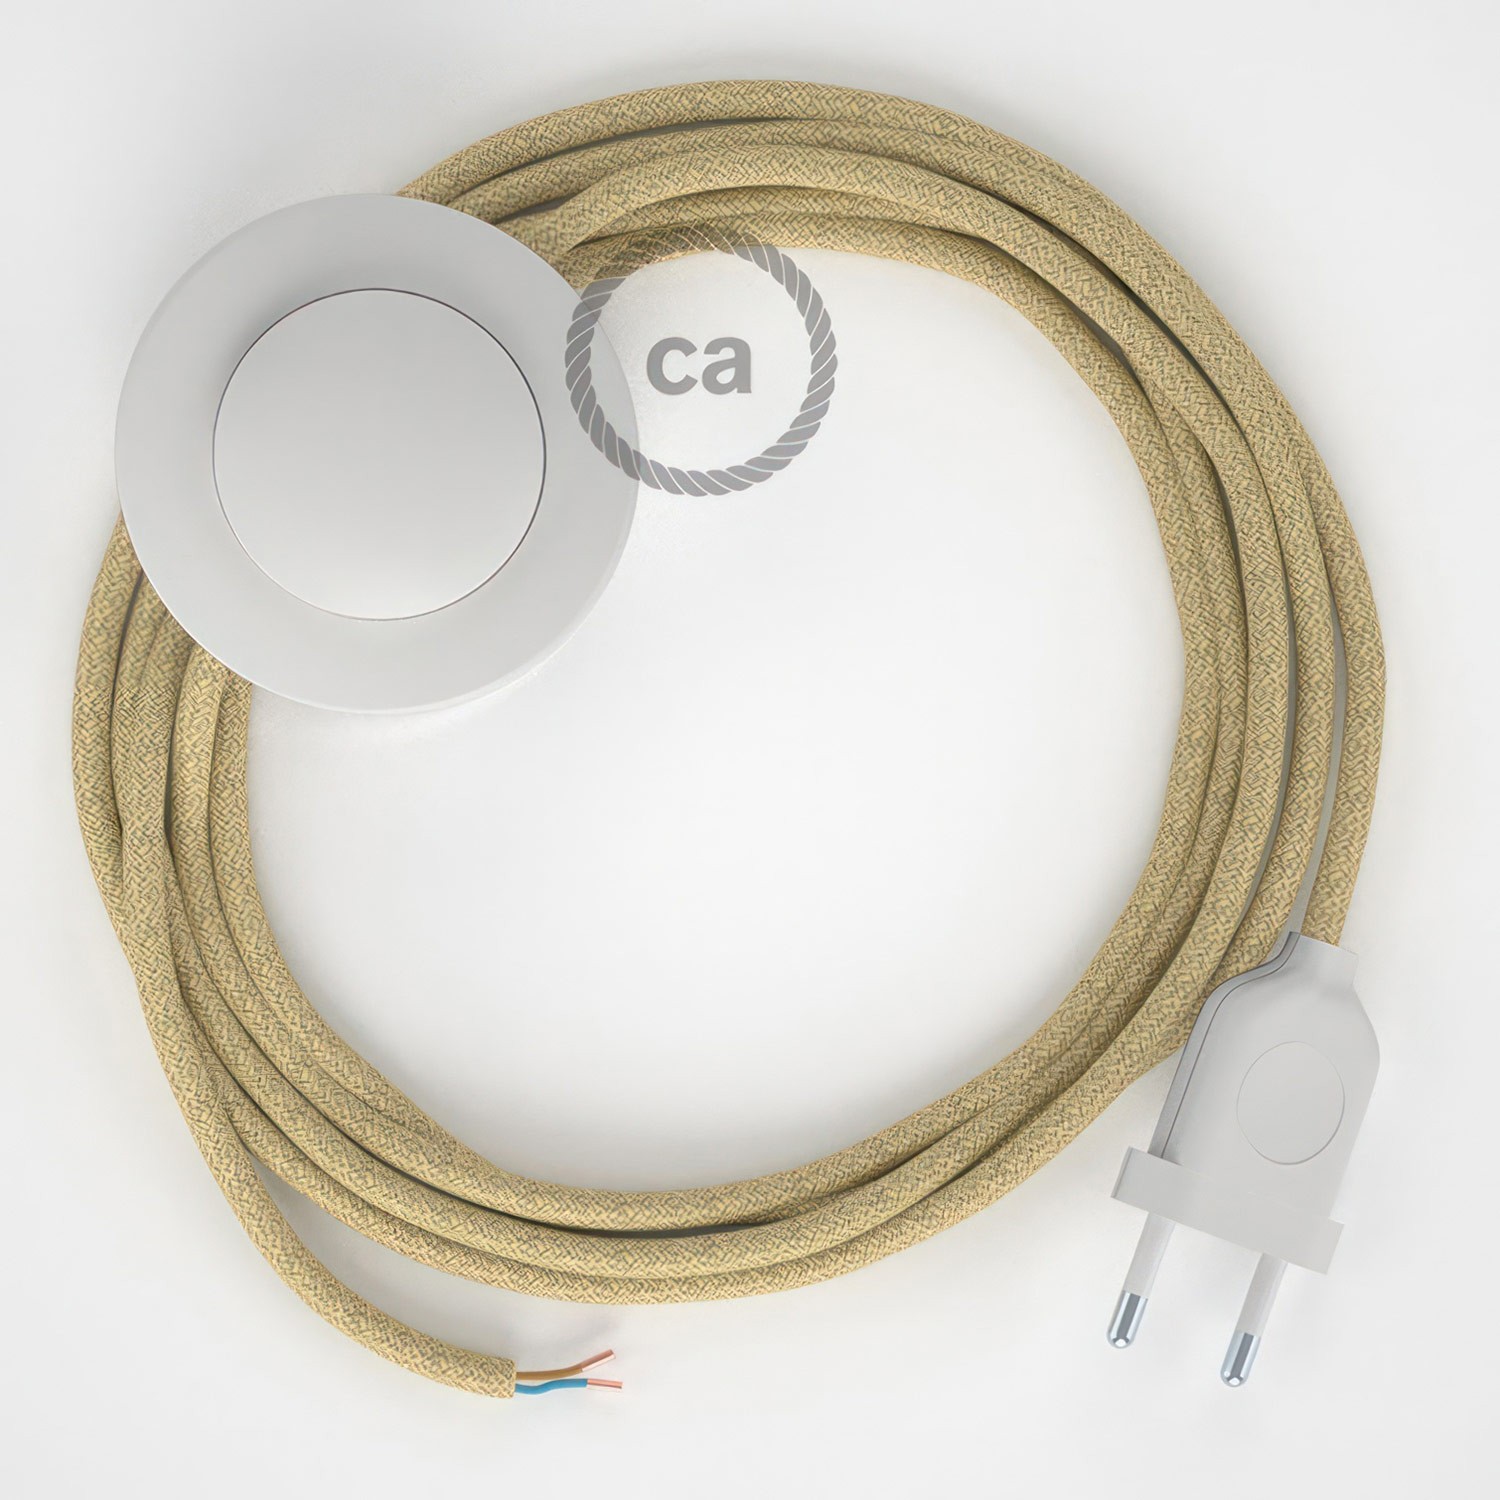 Cableado para lámpara de pie, cable RN06 Jute 3 m. Elige tu el color de la clavija y del interruptor!